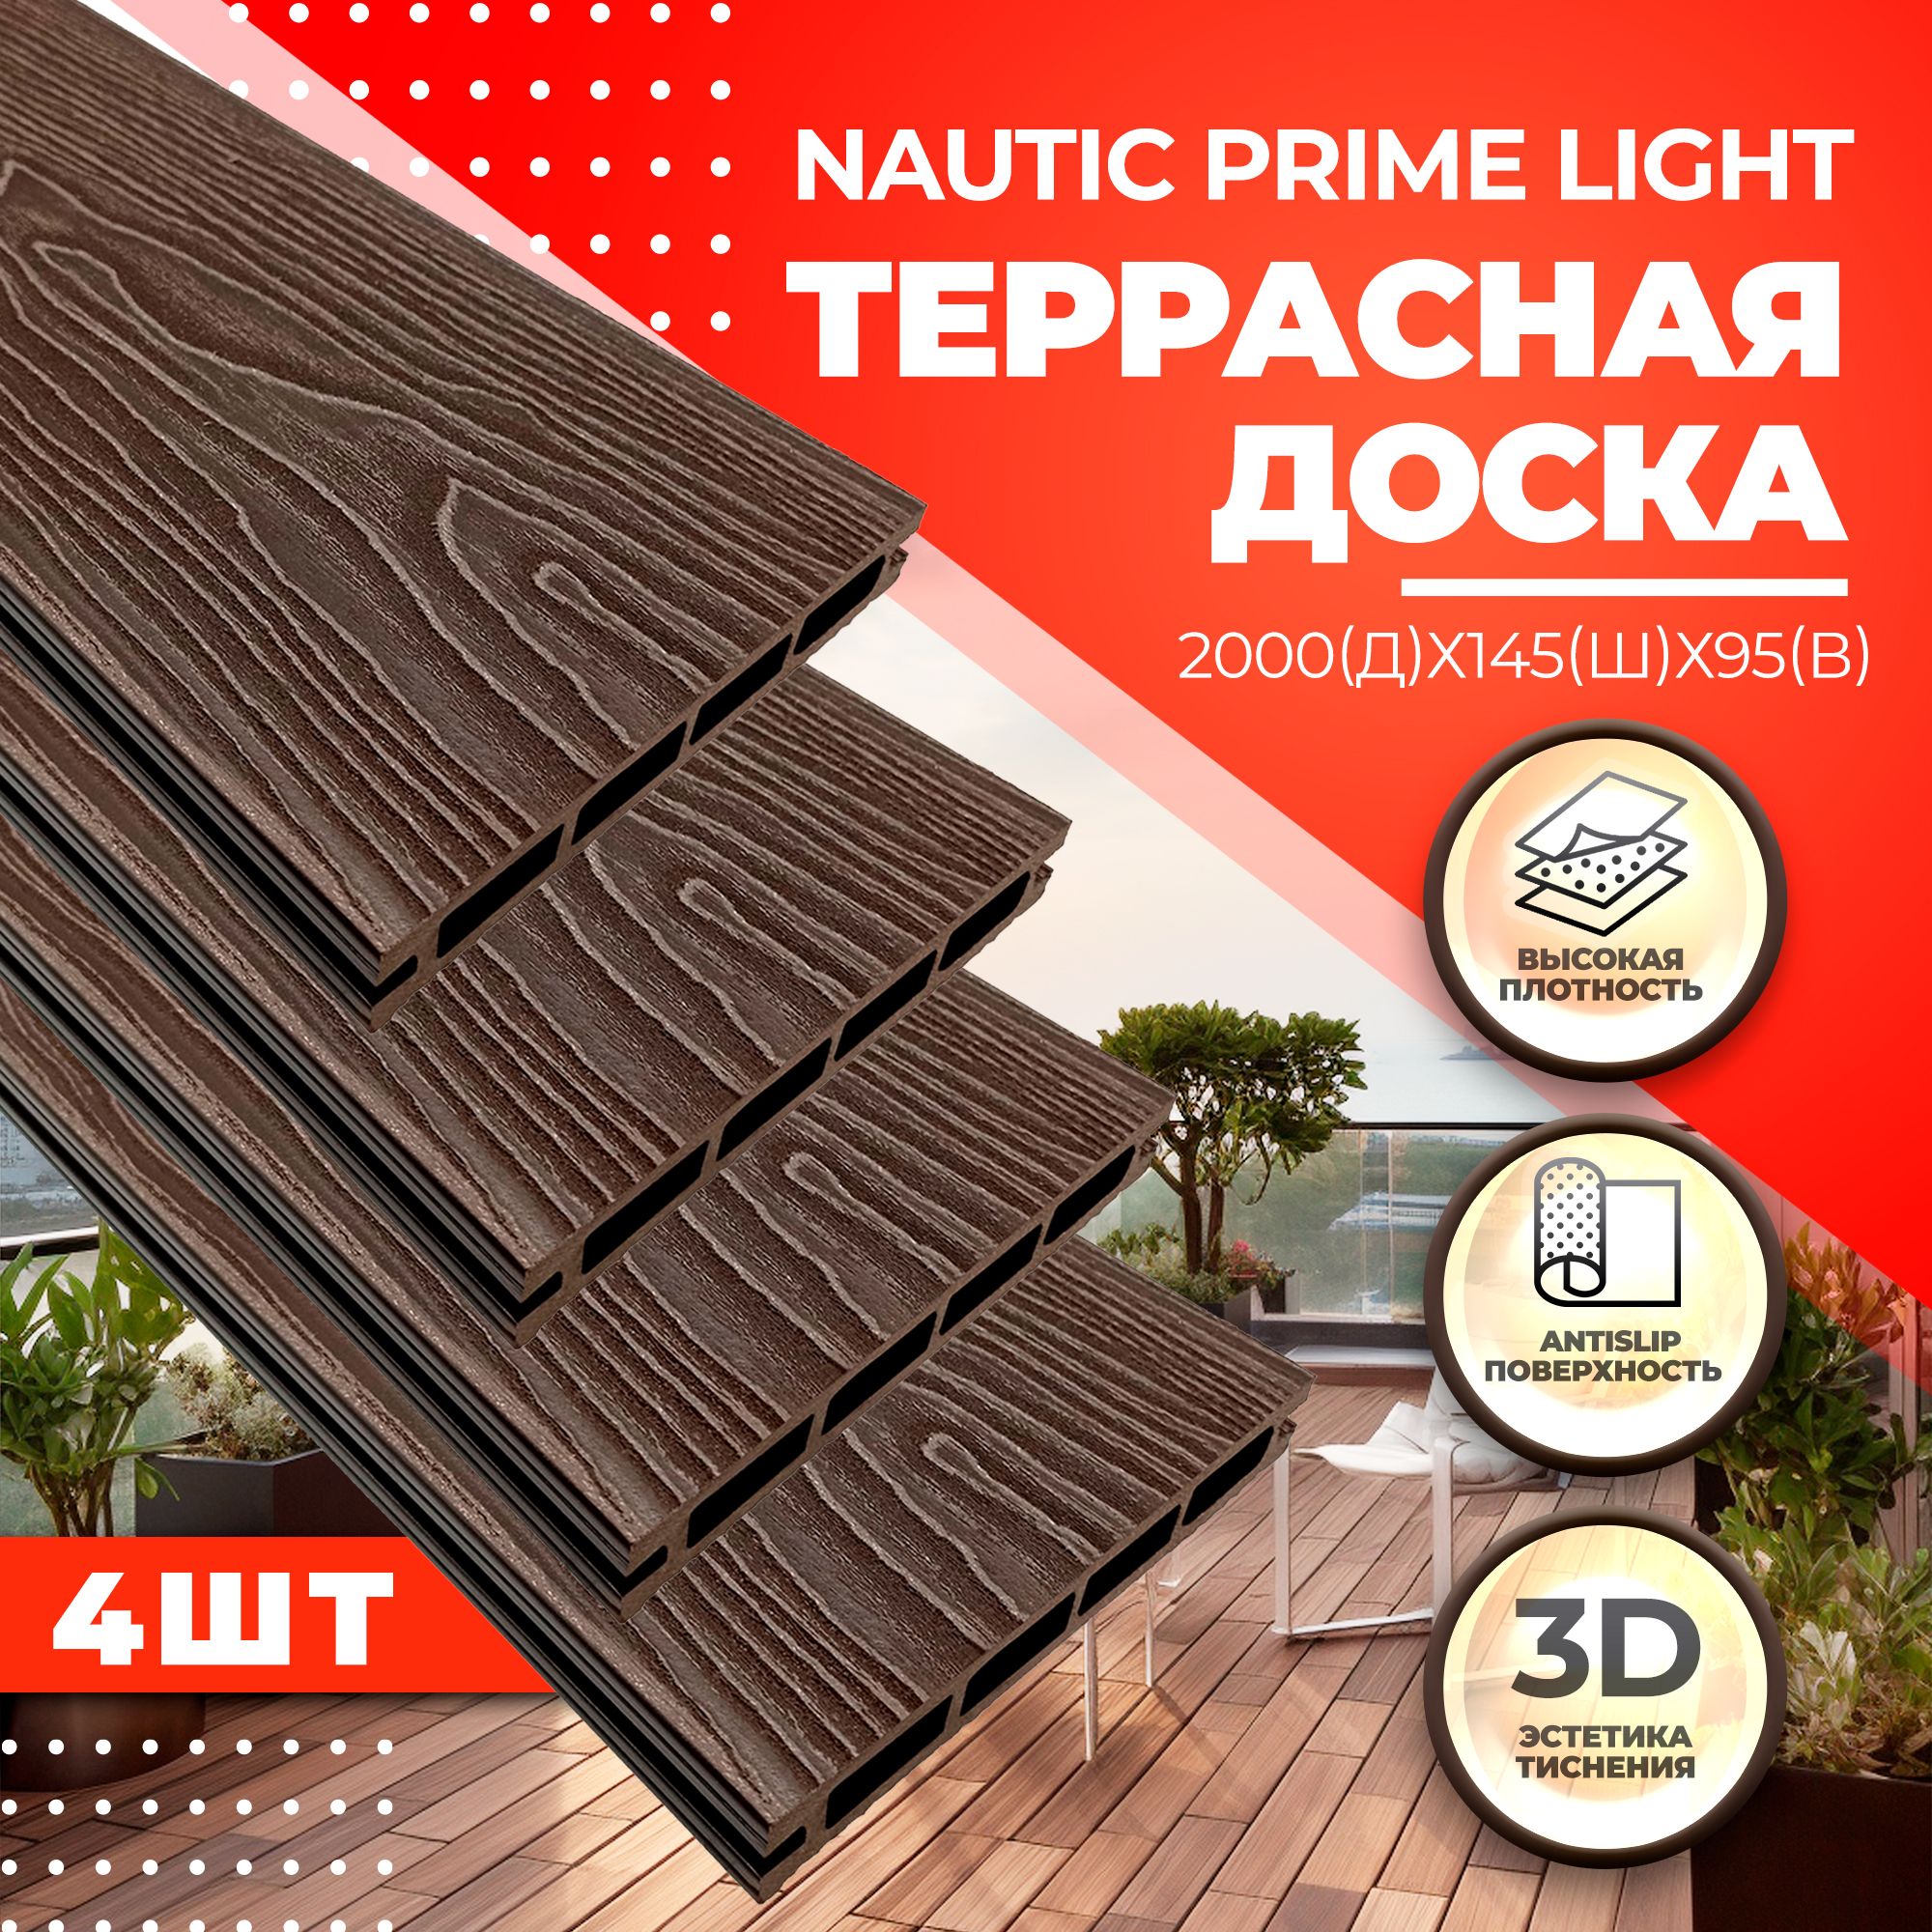 доска разделочная omoikiri cb 04 wood l венге 4999009 Комплект террасной доски NauticPrime Light Esthetic Wood CNPL2000V, венге, 4 шт.